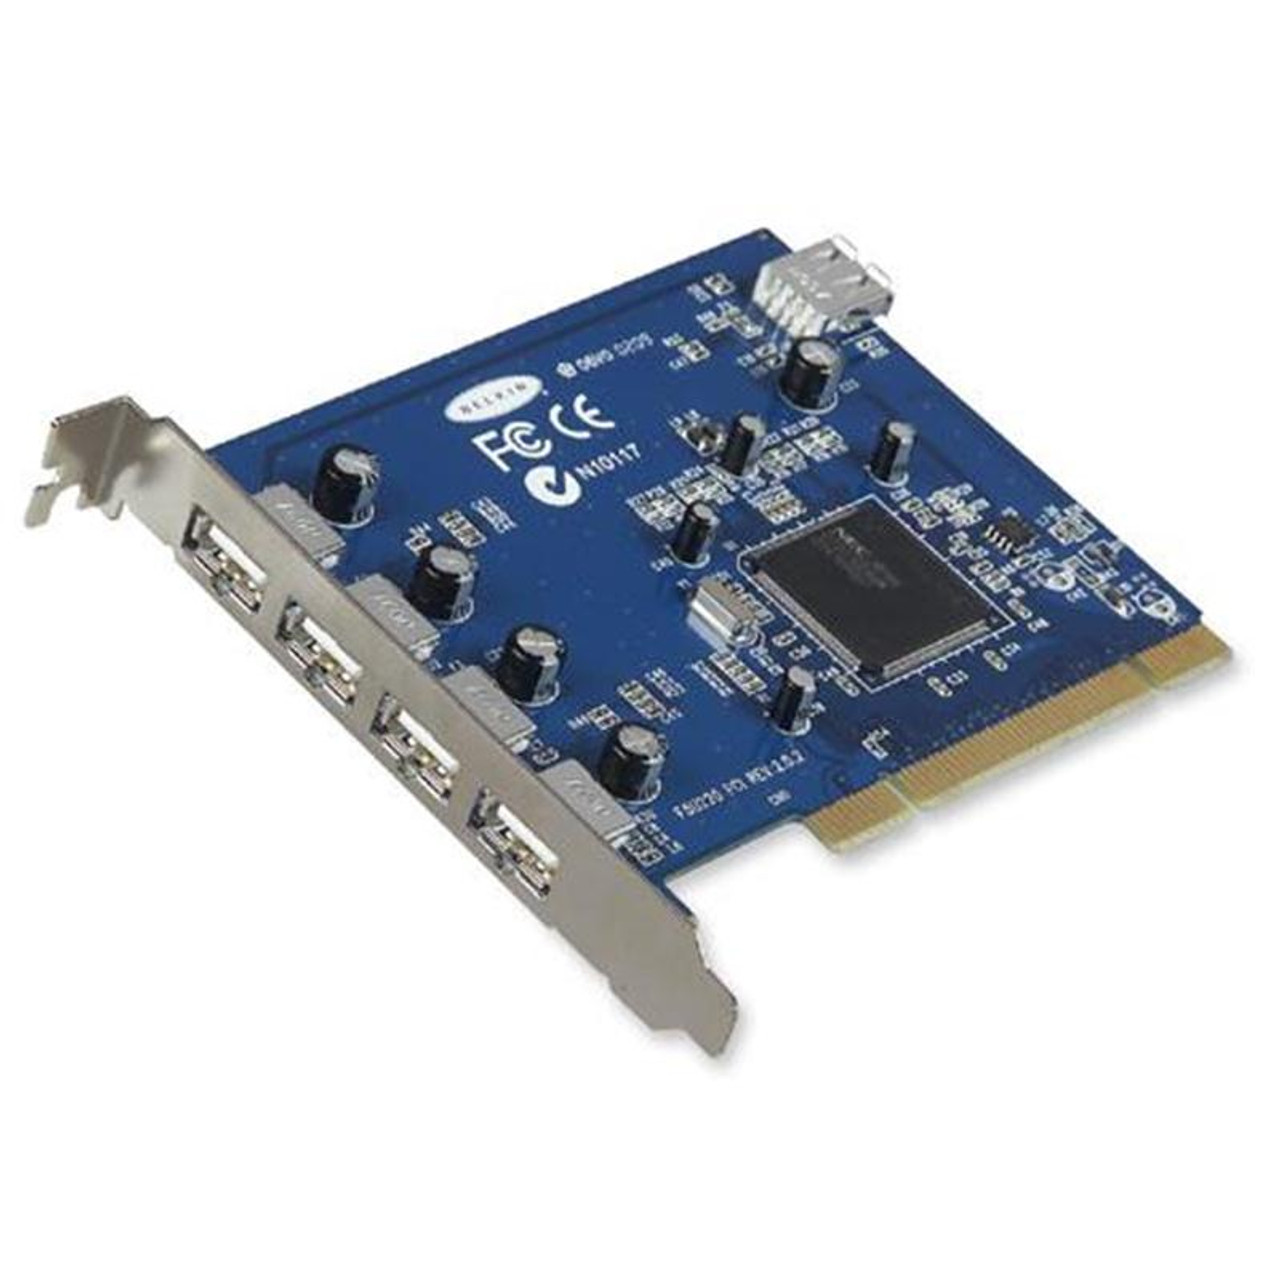 F5U220V1 Belkin Hi-Speed USB 2.0 5-Ports USB Adapter Internal PCI Card (Refurbished)